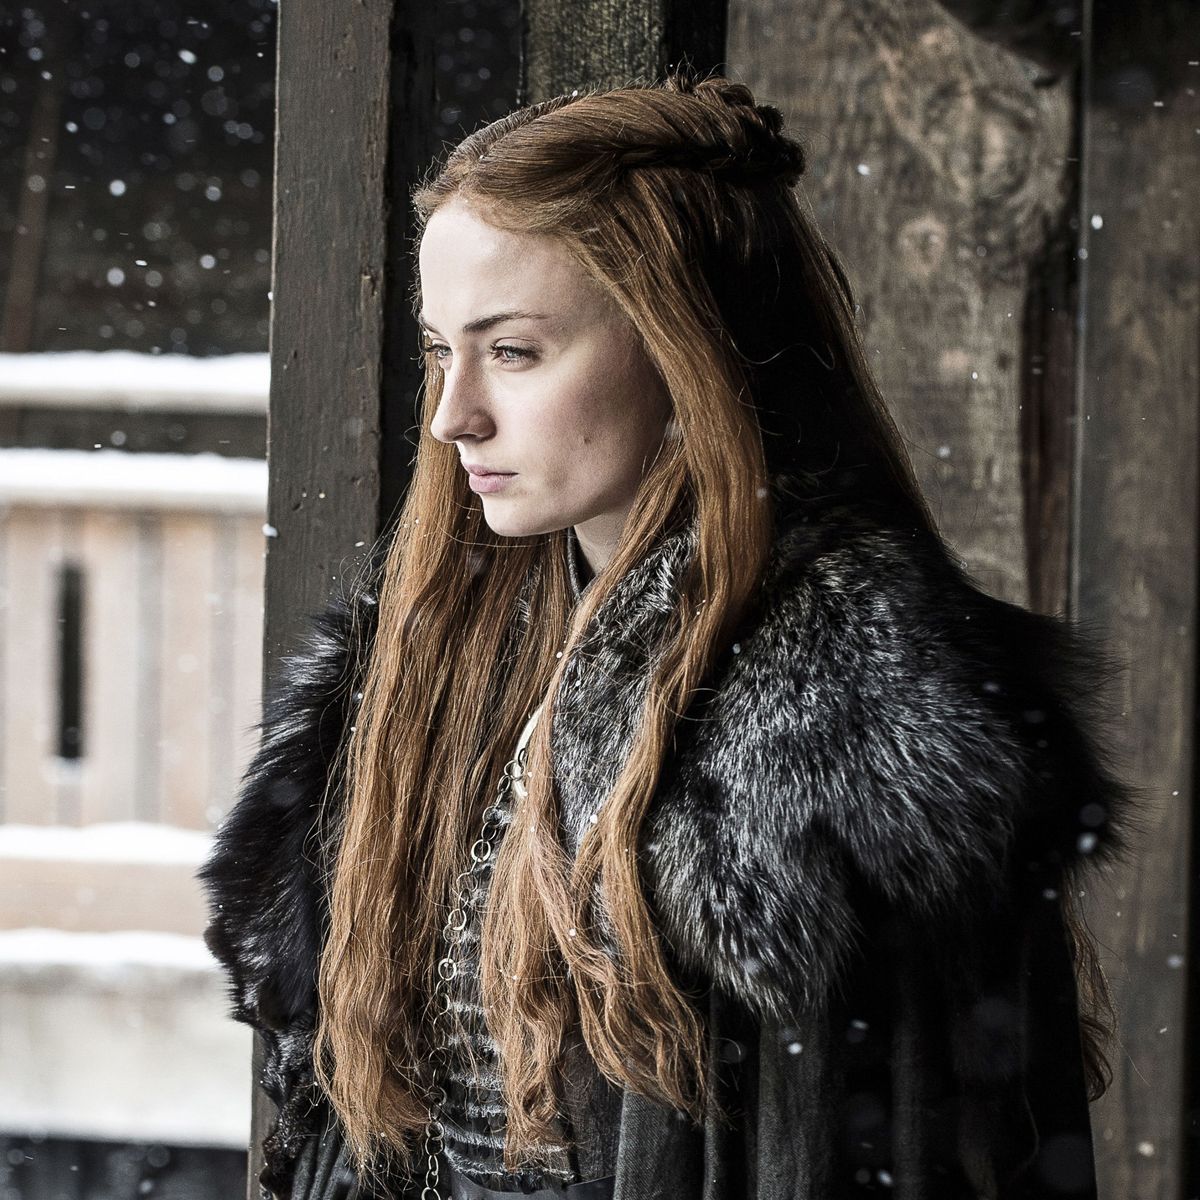 Sansa Stark on Game of Thrones